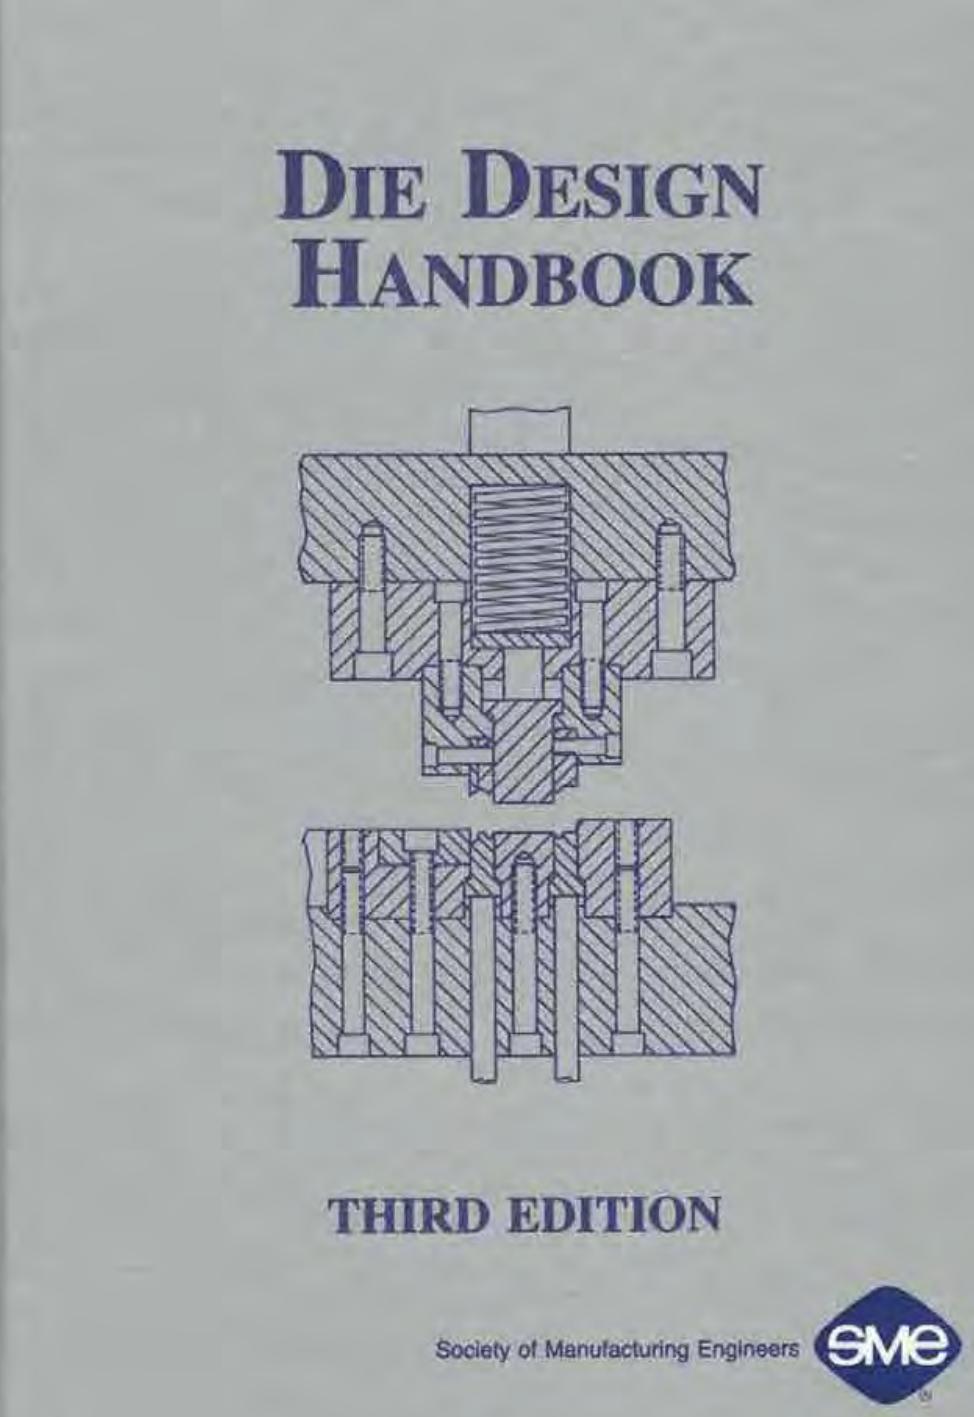 Die Design Handbook, 3rd Third Edition - David A. Smith.jpg